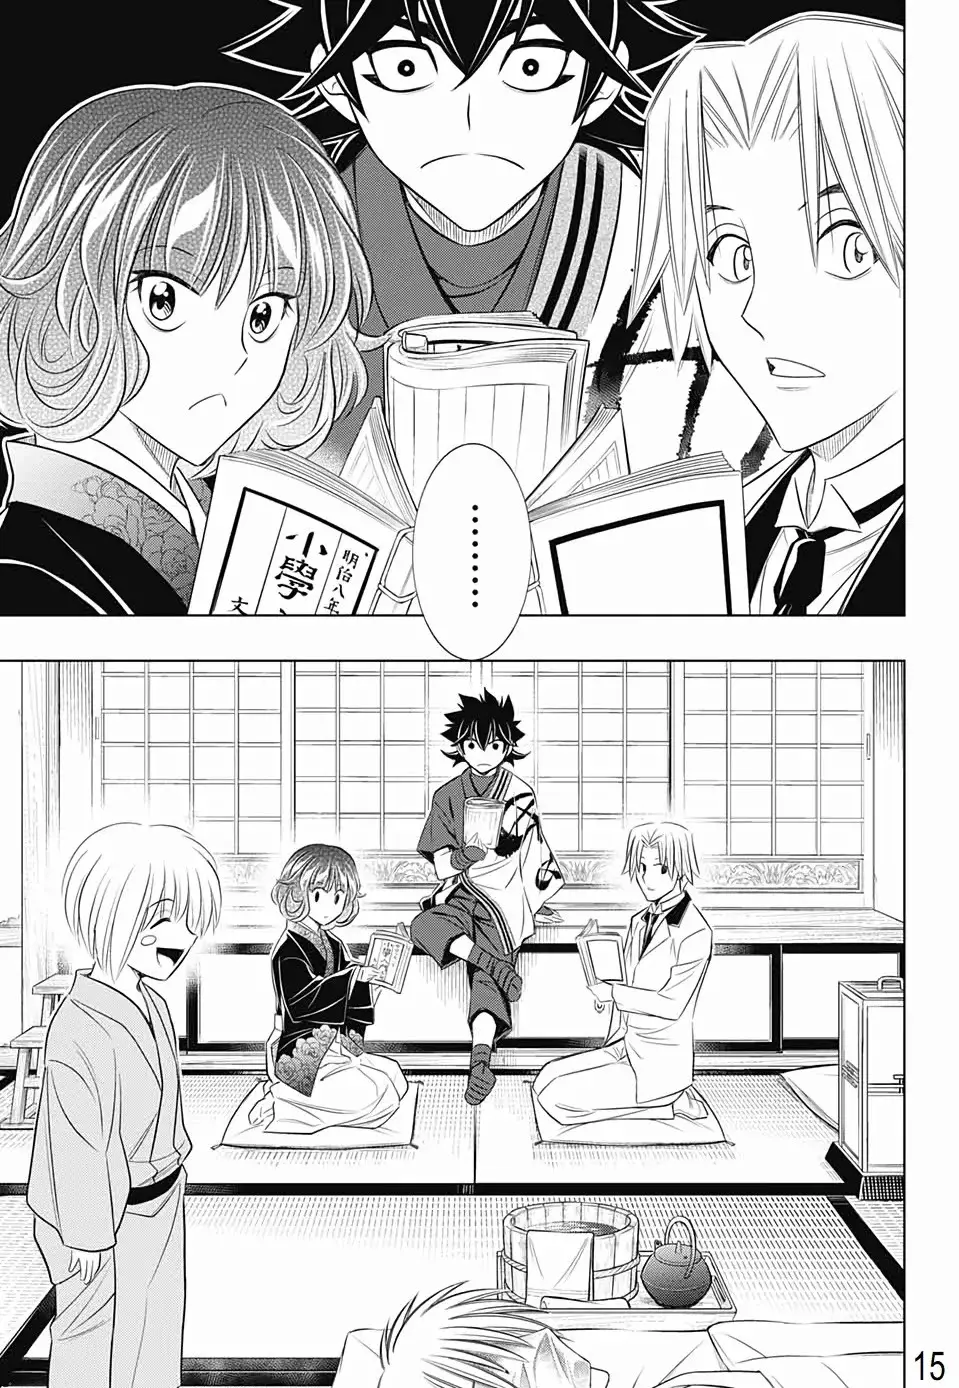 Rurouni Kenshin: Hokkaido Arc - 21 page 14